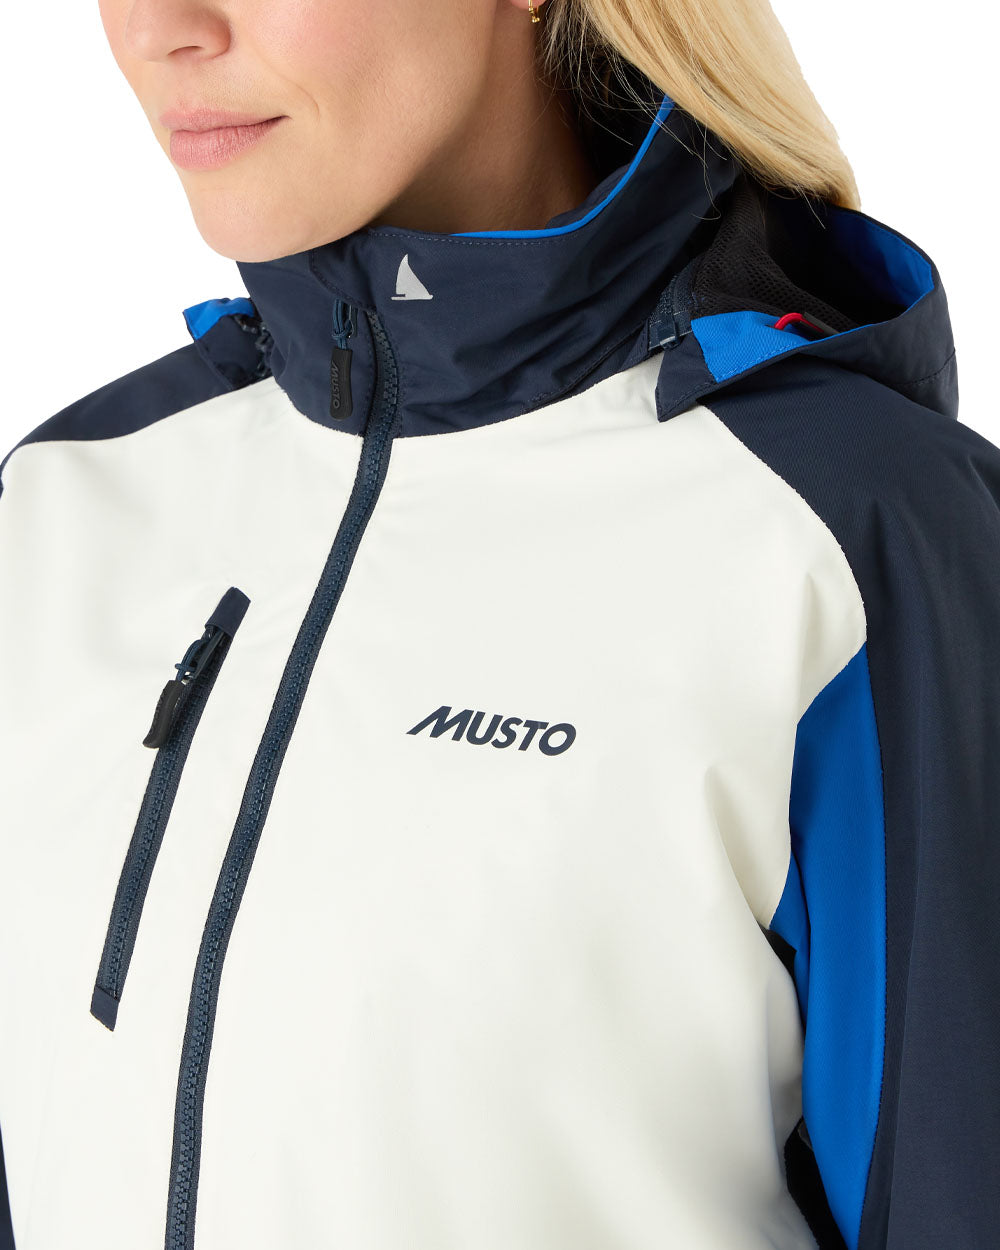 Aruba coloured Musto Womens Sardinia Jacket 2.0 on White background 